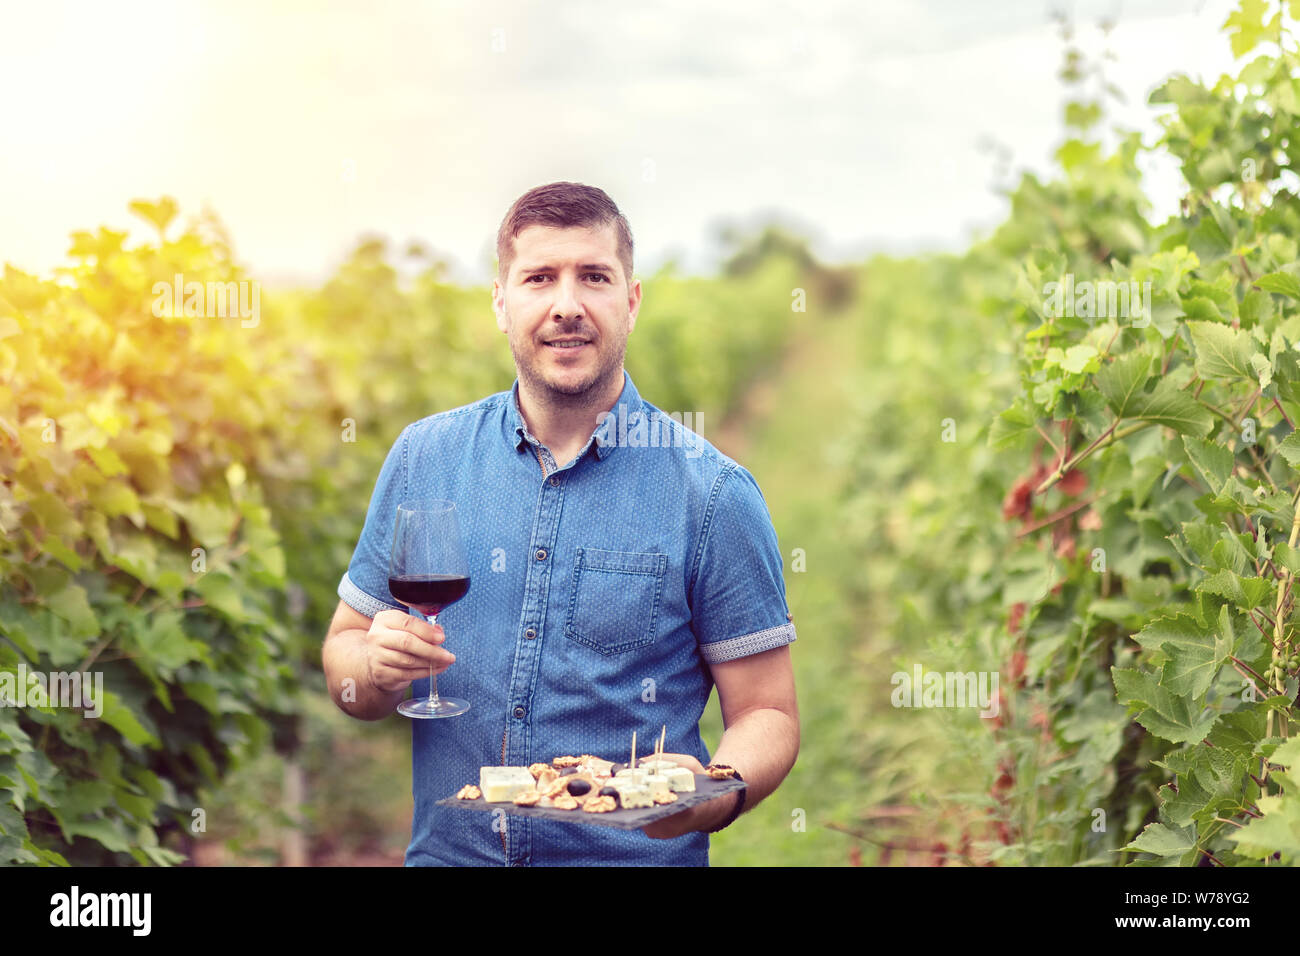 Gerne erfolgreiche Winzer im Weinberg holding Glas Rotwein und Board mit Käse, Nüssen und Trauben - lächelnde Menschen auf der Farm house Weingut Weinprobe Stockfoto